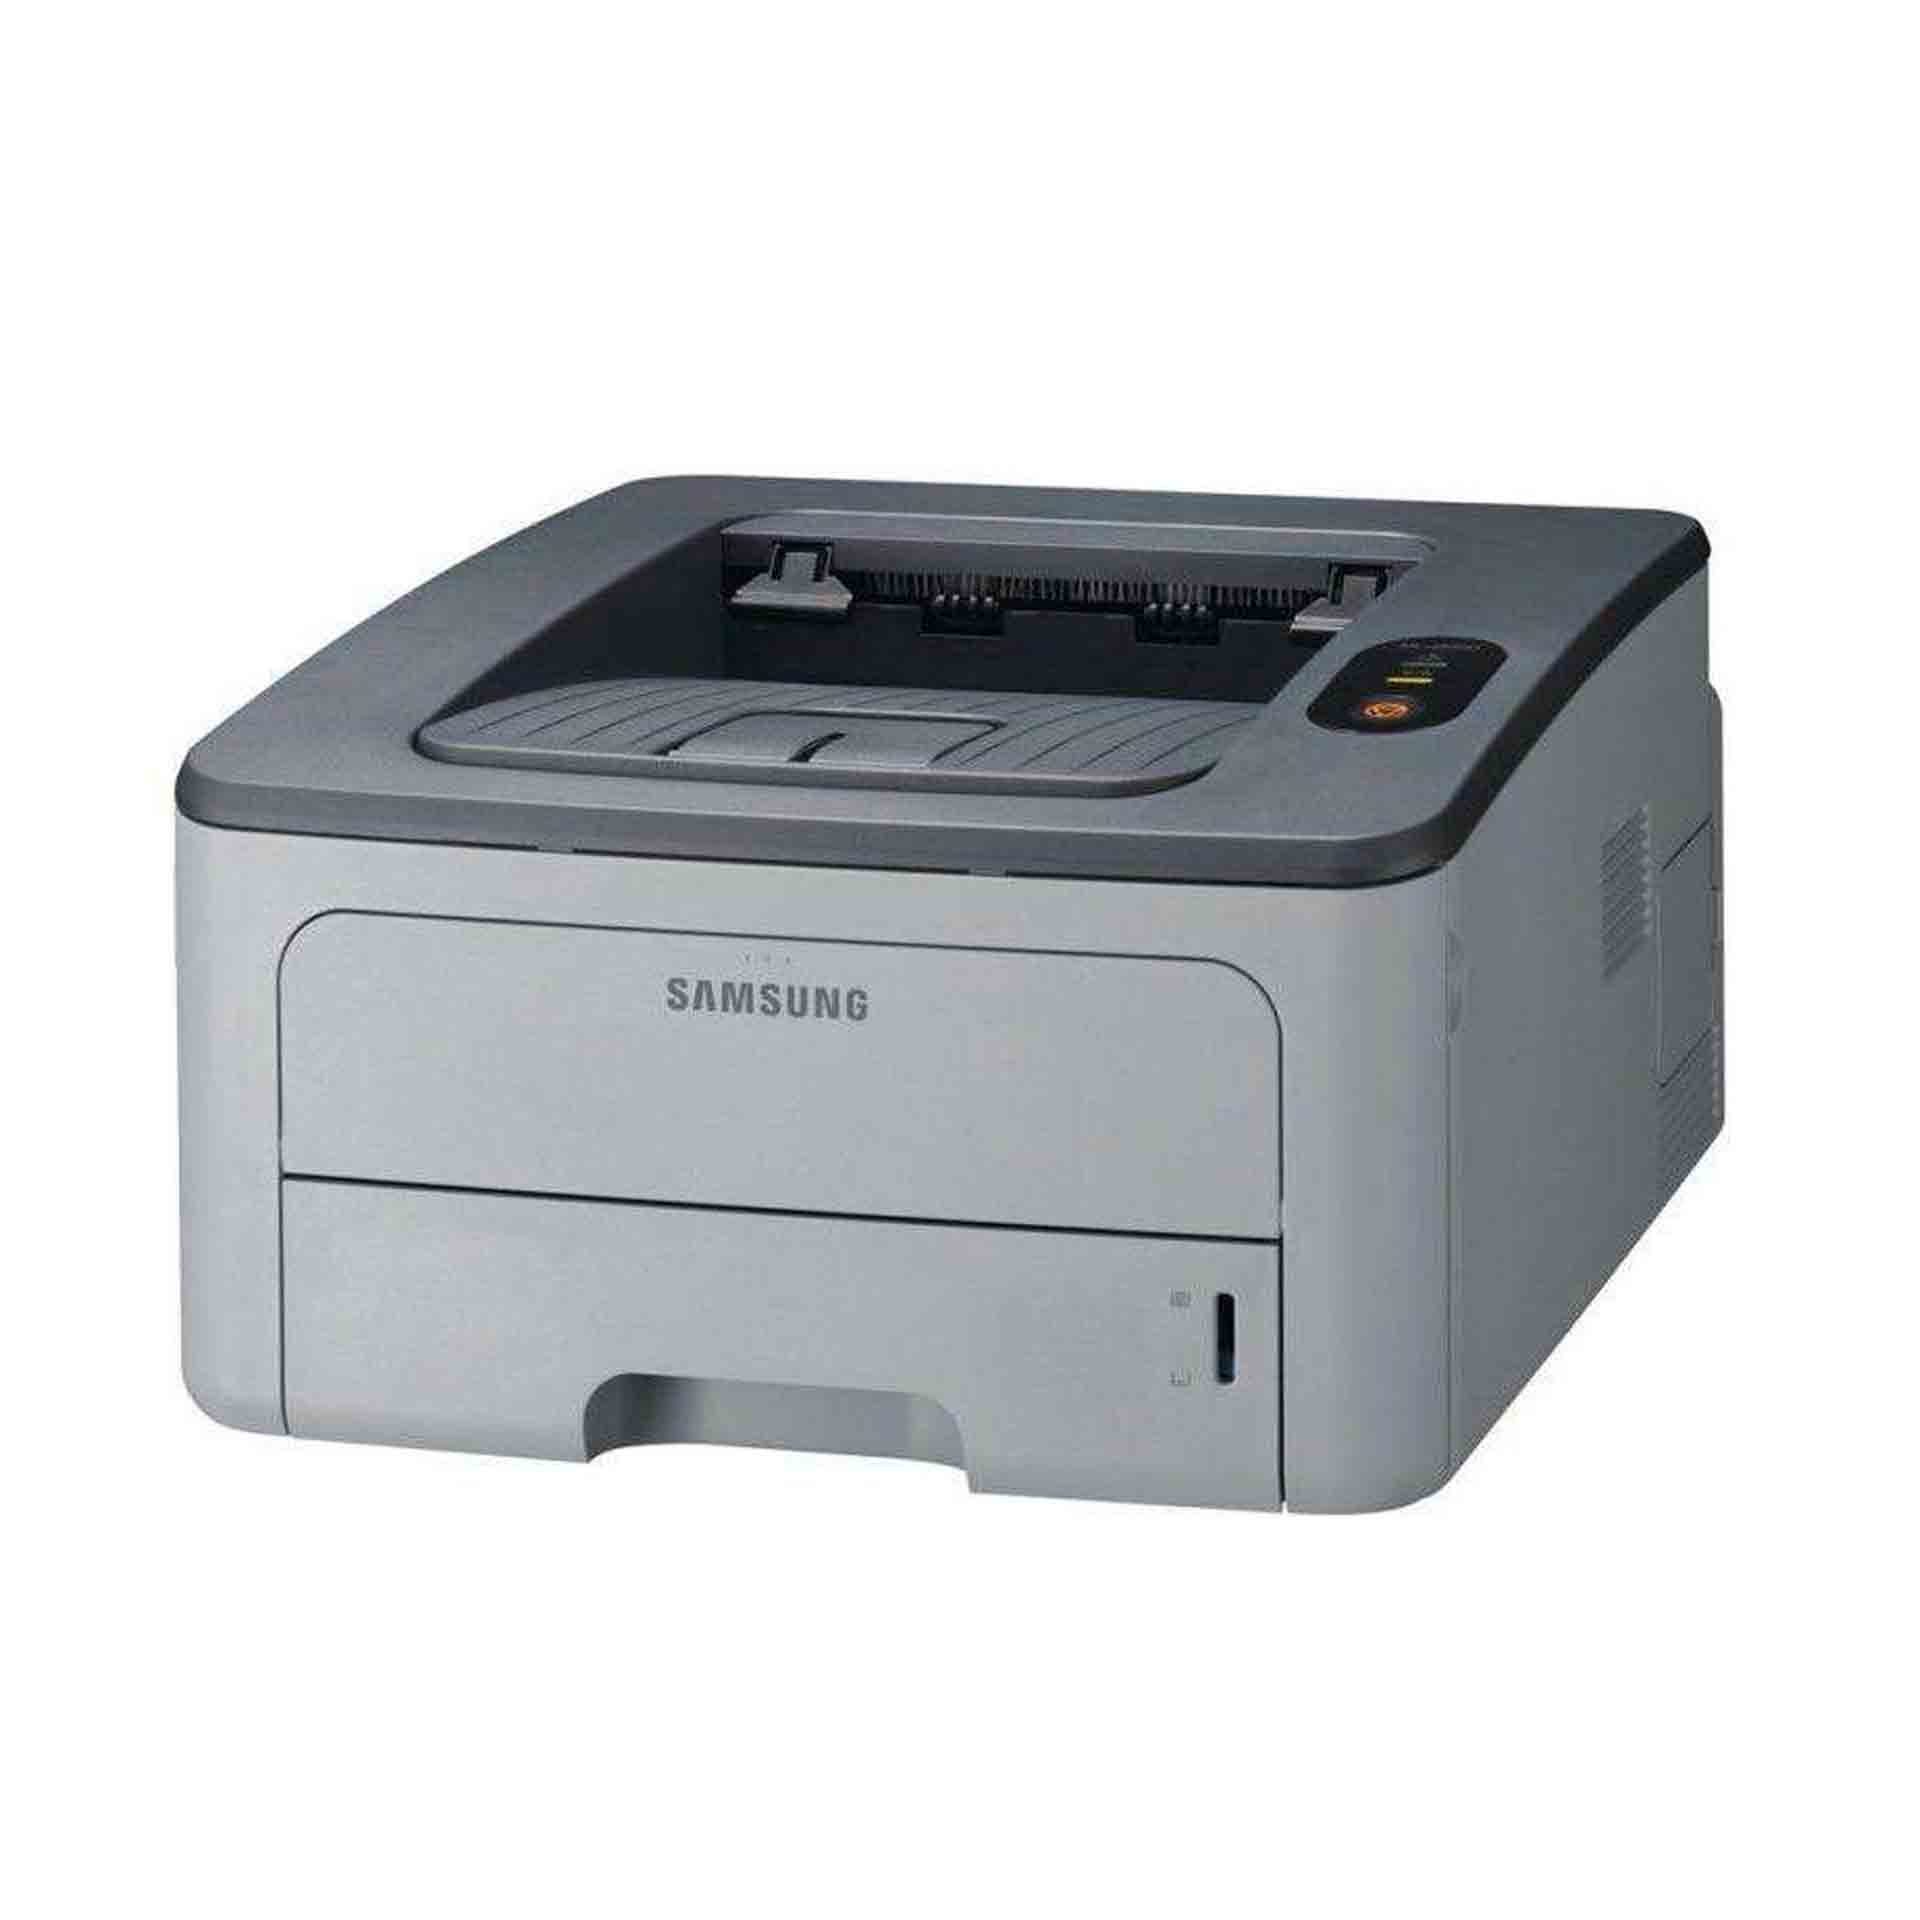 Принтер самсунг 2015 драйвер. Samsung ml-2855. Принтер Samsung ml-6515nd. Принтер Samsung ml 2850. Принтер Samsung ml-5512nd.